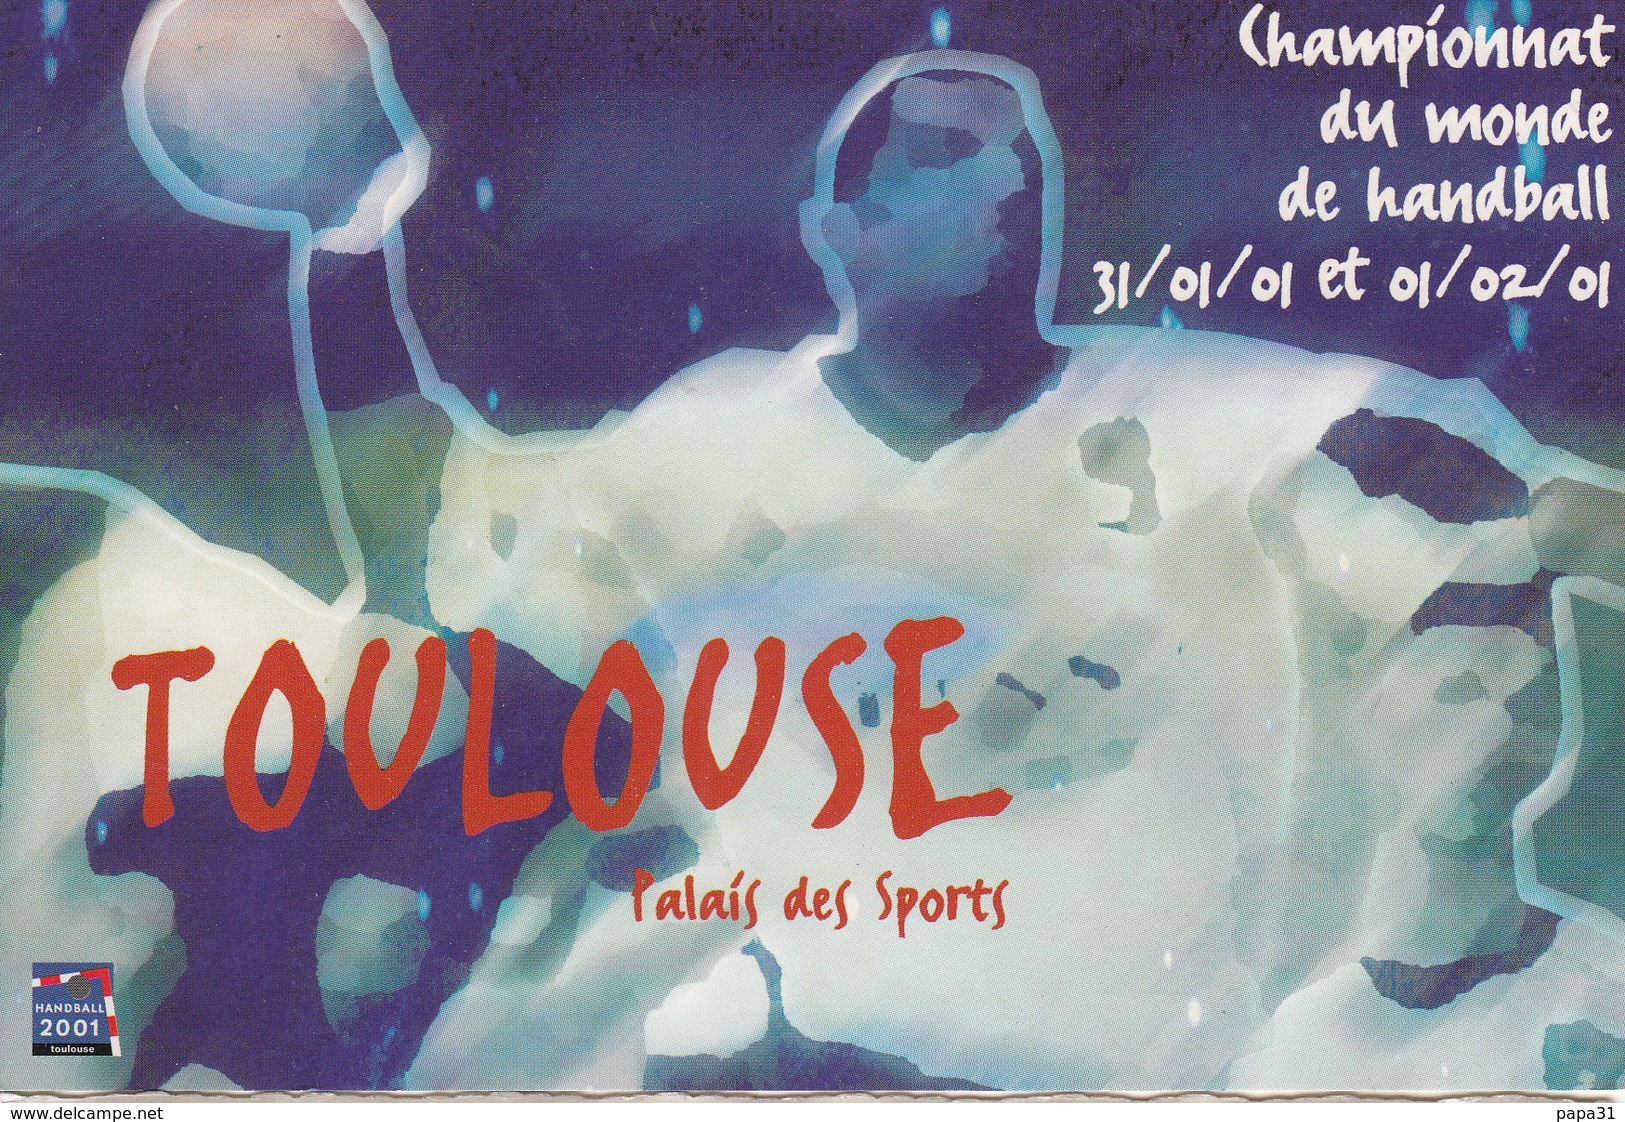 Championnat  Du Monde De Handball  31.01.01 Et 01.02.01 à TOULOUSE  Palais Des Sports - Pallamano